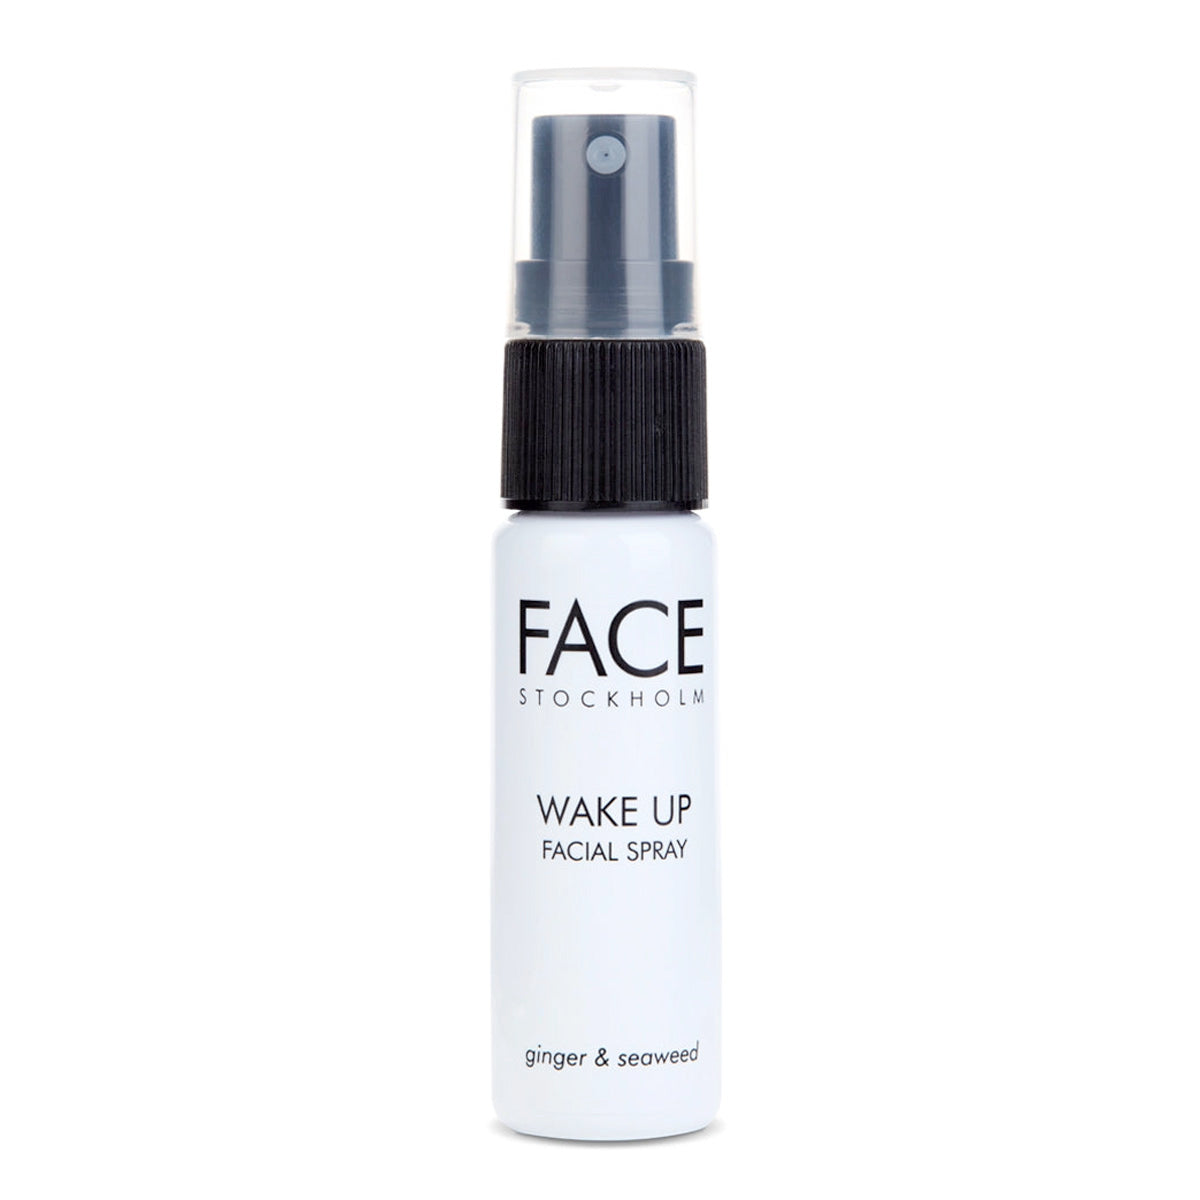 Wake Up Facial Spray